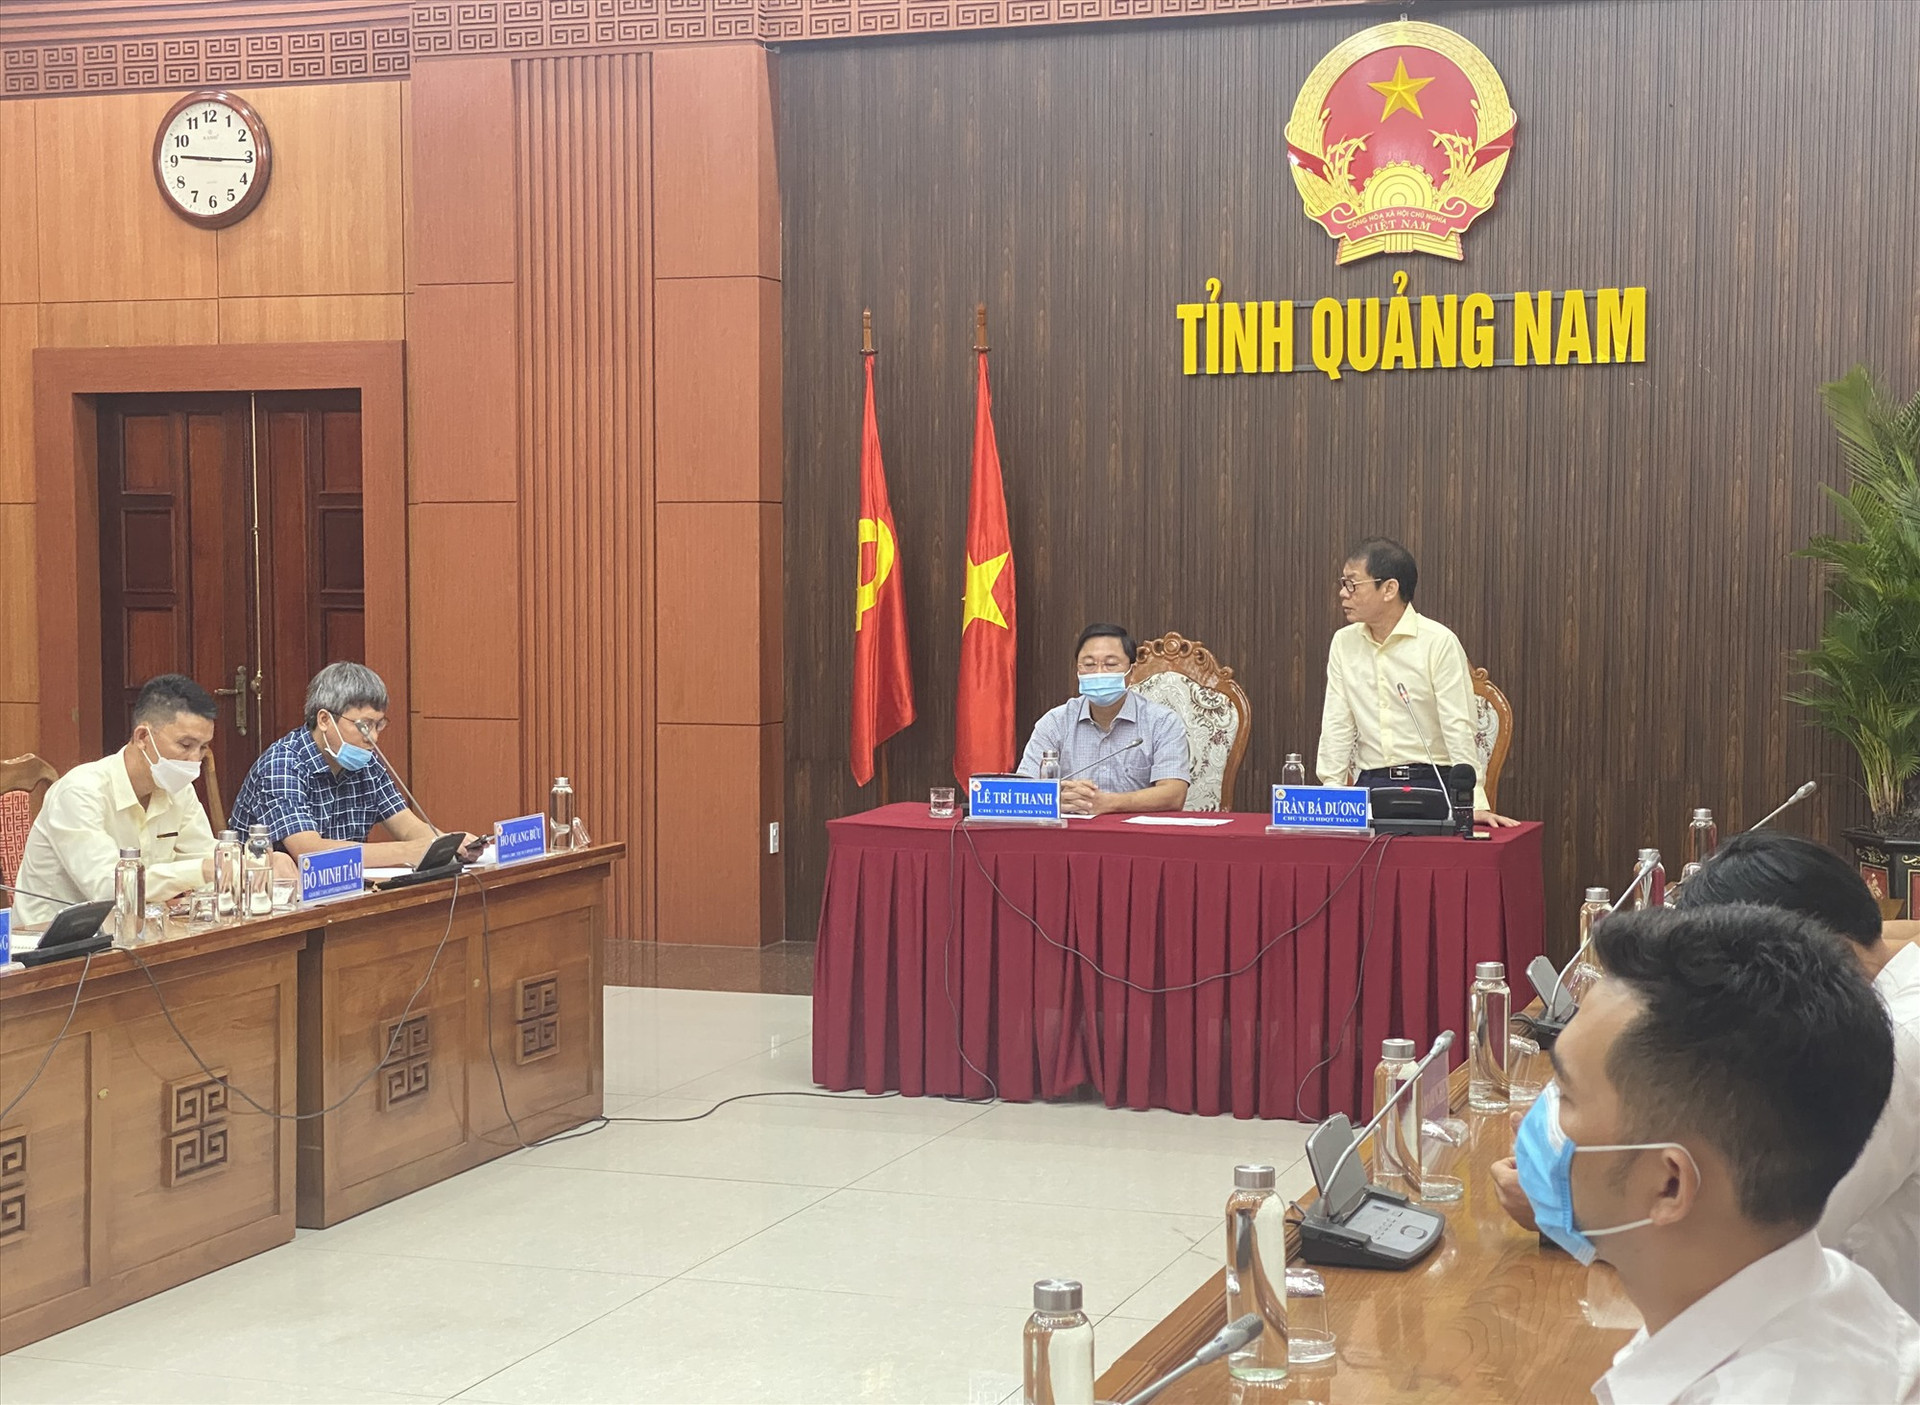 Chủ tịch UBND tỉnh Lê Trí Thanh và Chủ tịch HĐQT Thaco Trần Bá Dương chủ trì hội nghị trực tuyến kêu gọi đầu tư vào ngành cơ khí và công nghiệp hỗ trợ tại Chu Lai. Ảnh: T.D